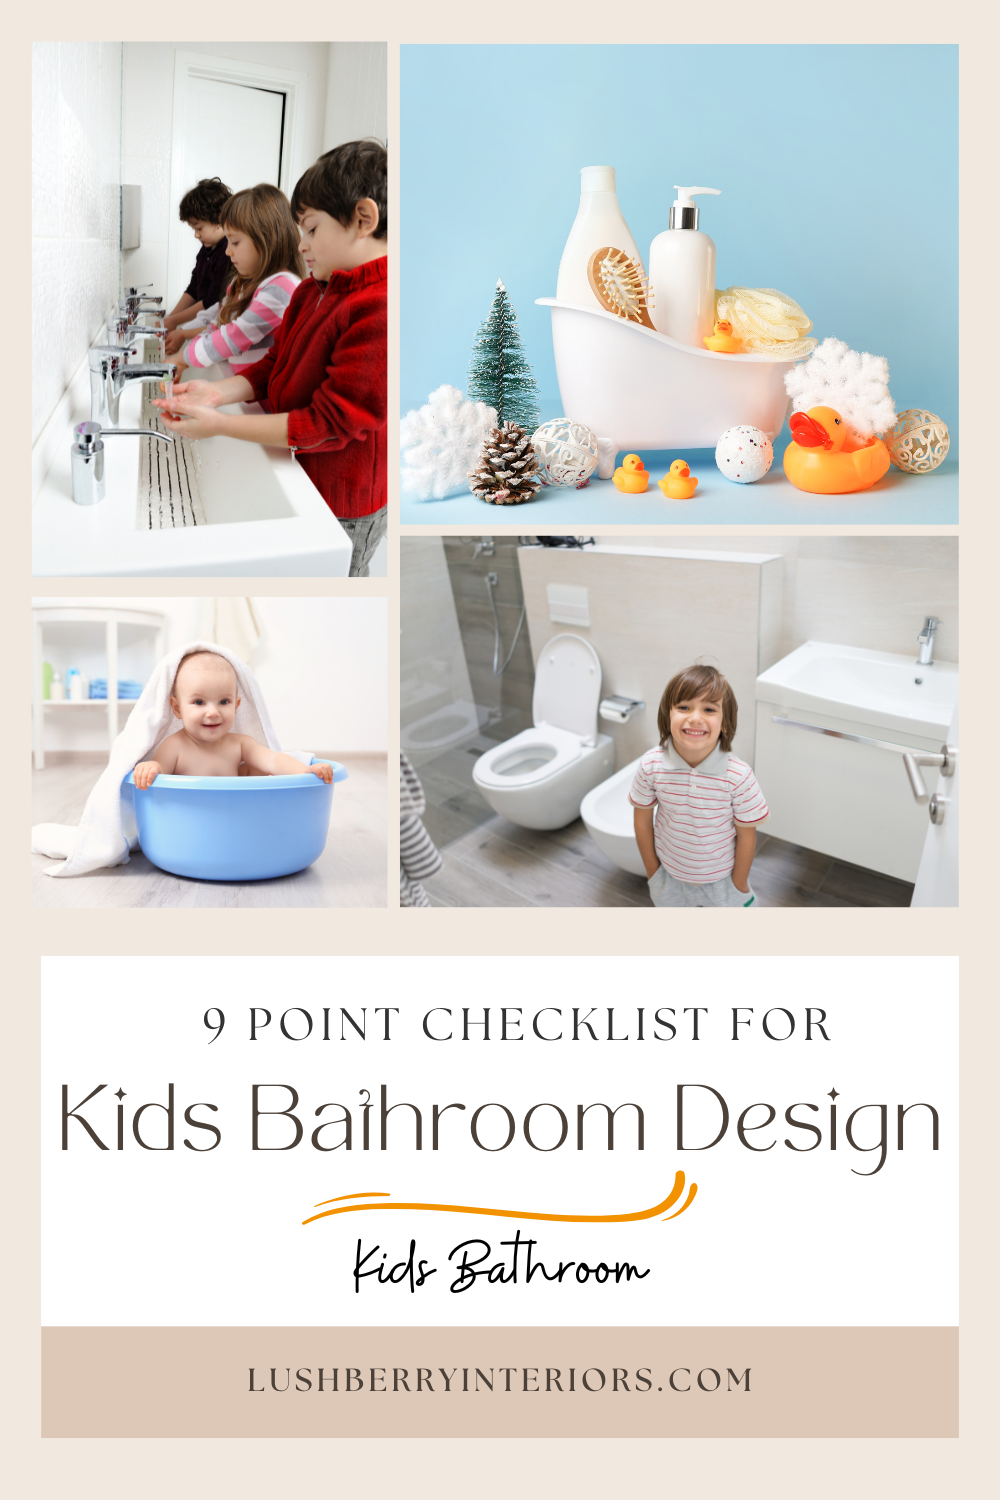 Kids Bathroom Design - The 9 Point Checklist